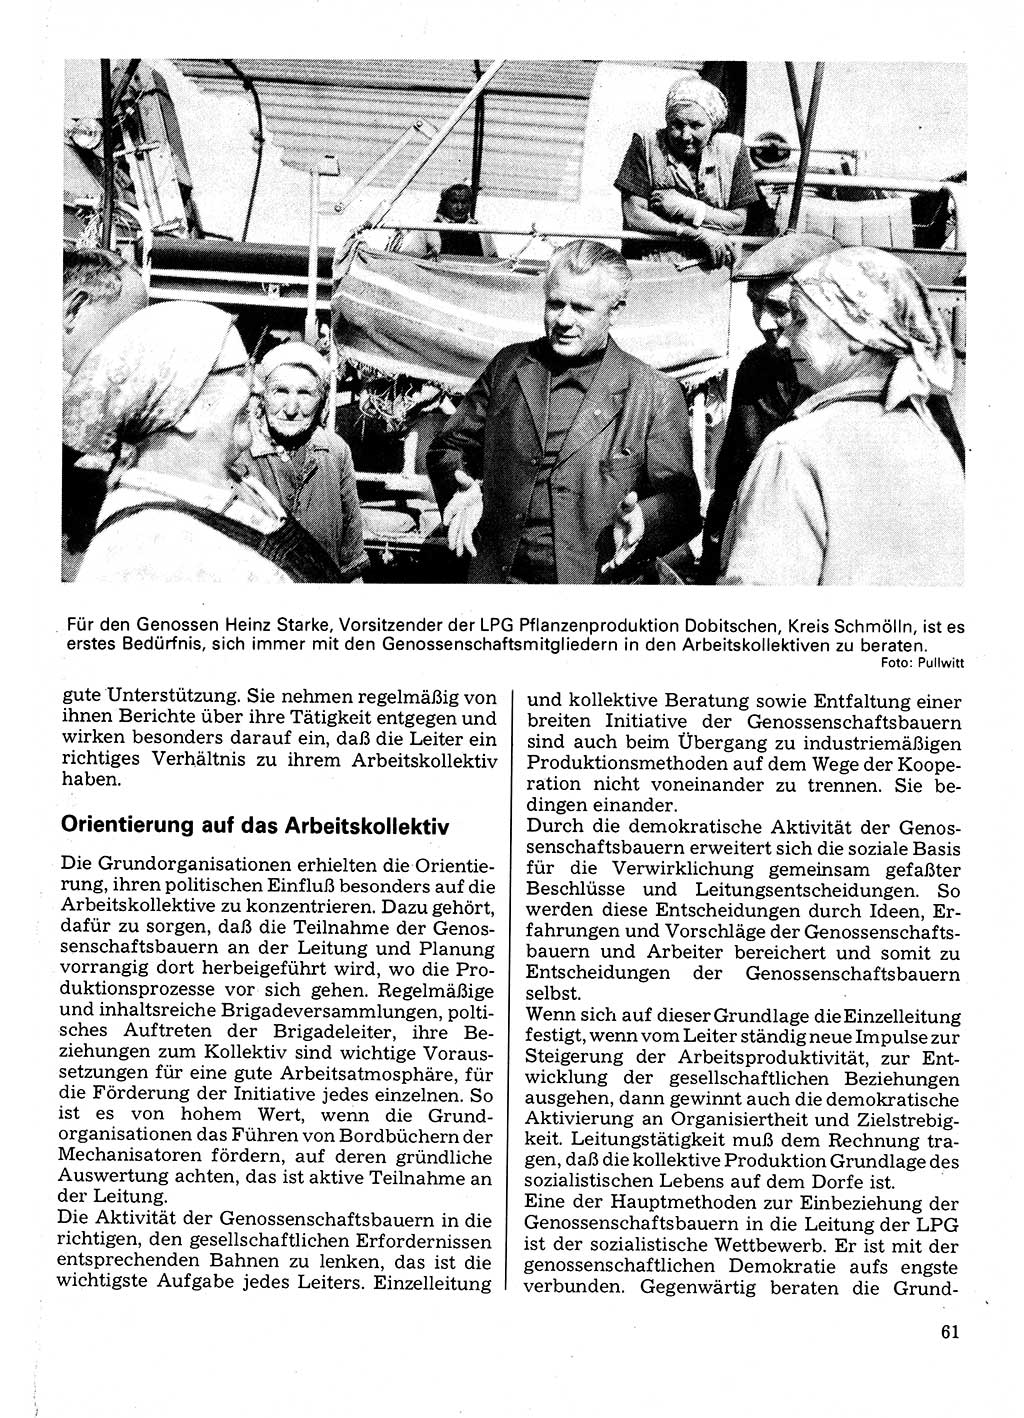 Neuer Weg (NW), Organ des Zentralkomitees (ZK) der SED (Sozialistische Einheitspartei Deutschlands) für Fragen des Parteilebens, 32. Jahrgang [Deutsche Demokratische Republik (DDR)] 1977, Seite 61 (NW ZK SED DDR 1977, S. 61)